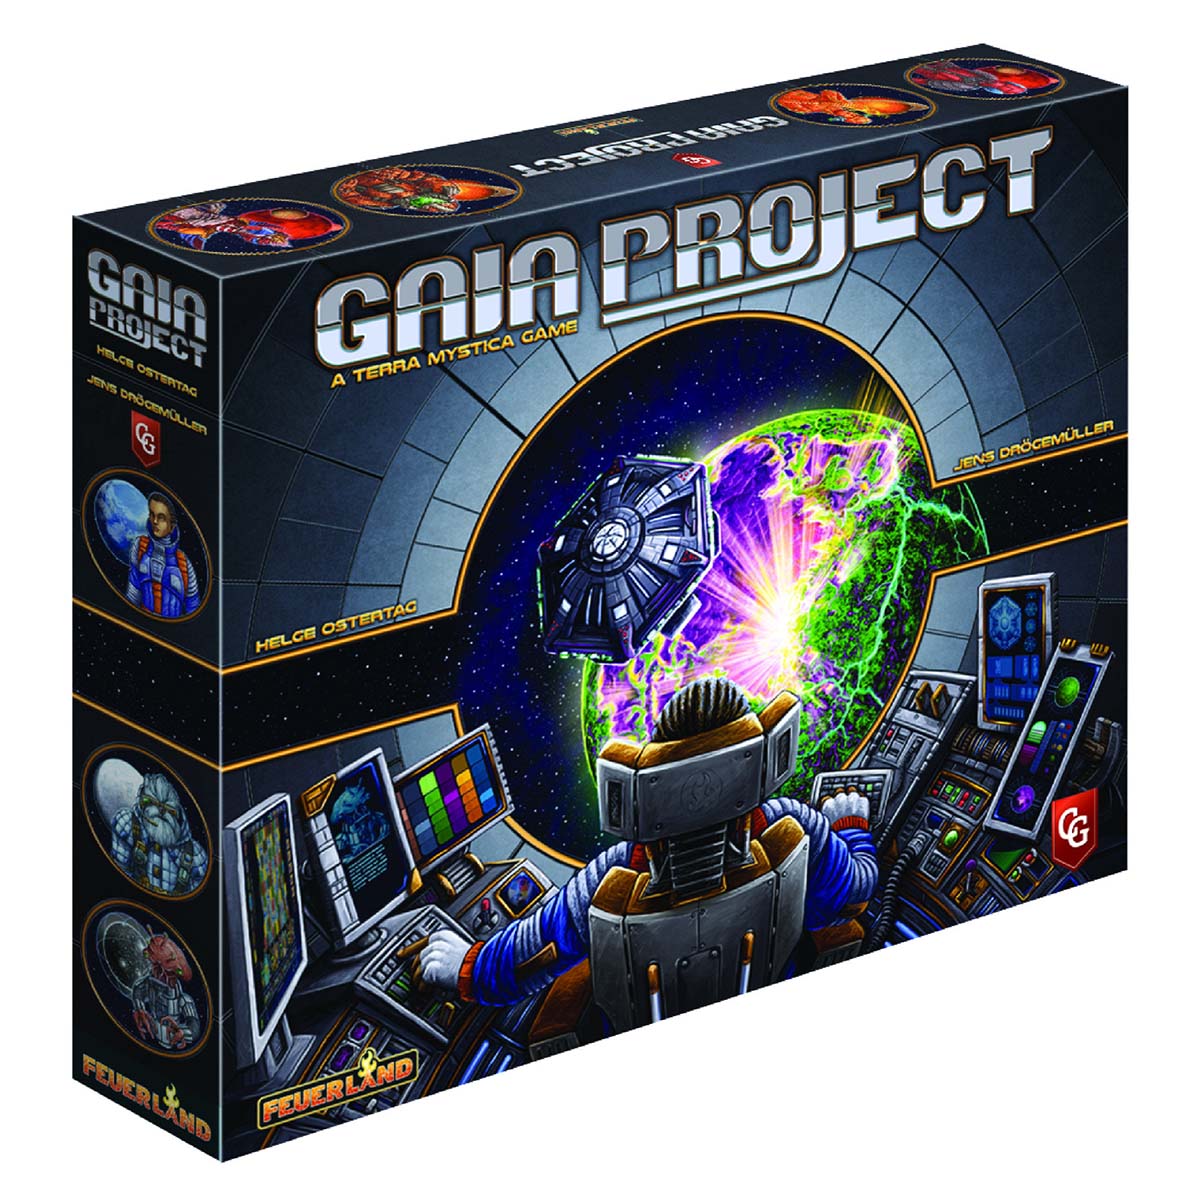 Gaia Project board game box